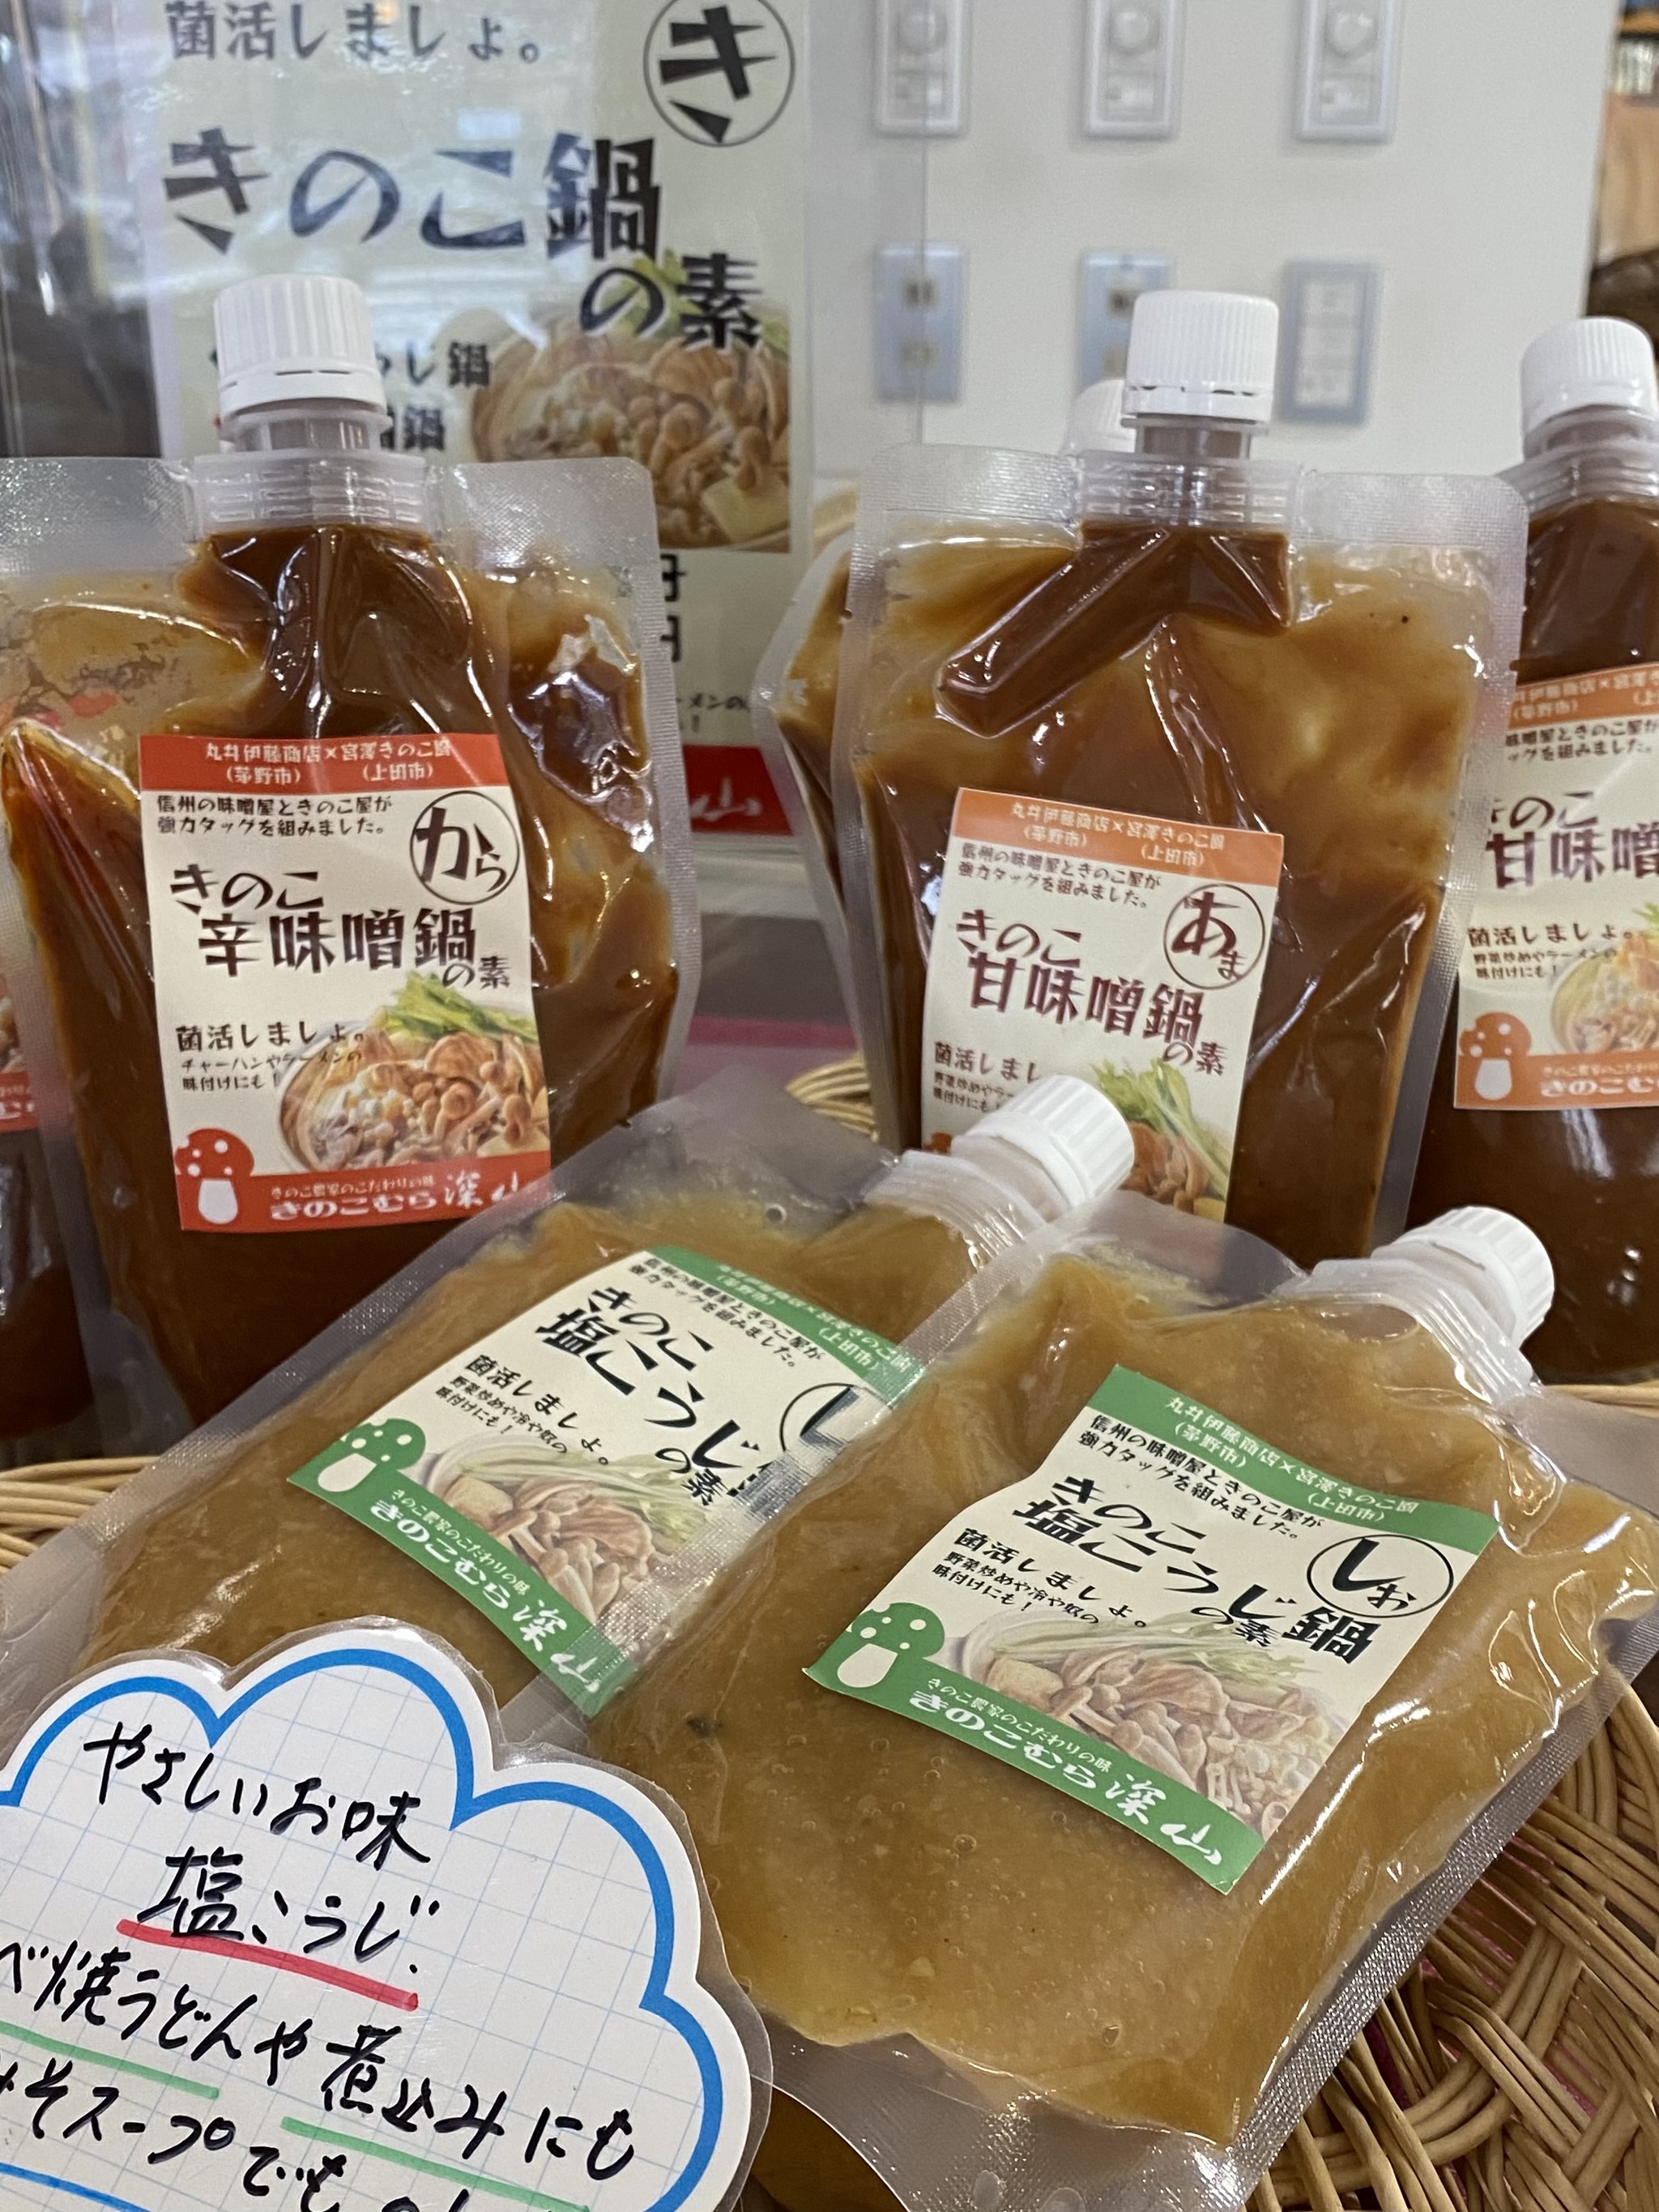 上田市観光会館売店できのこむら深山オリジナル「きのこ鍋の素」が売れています！